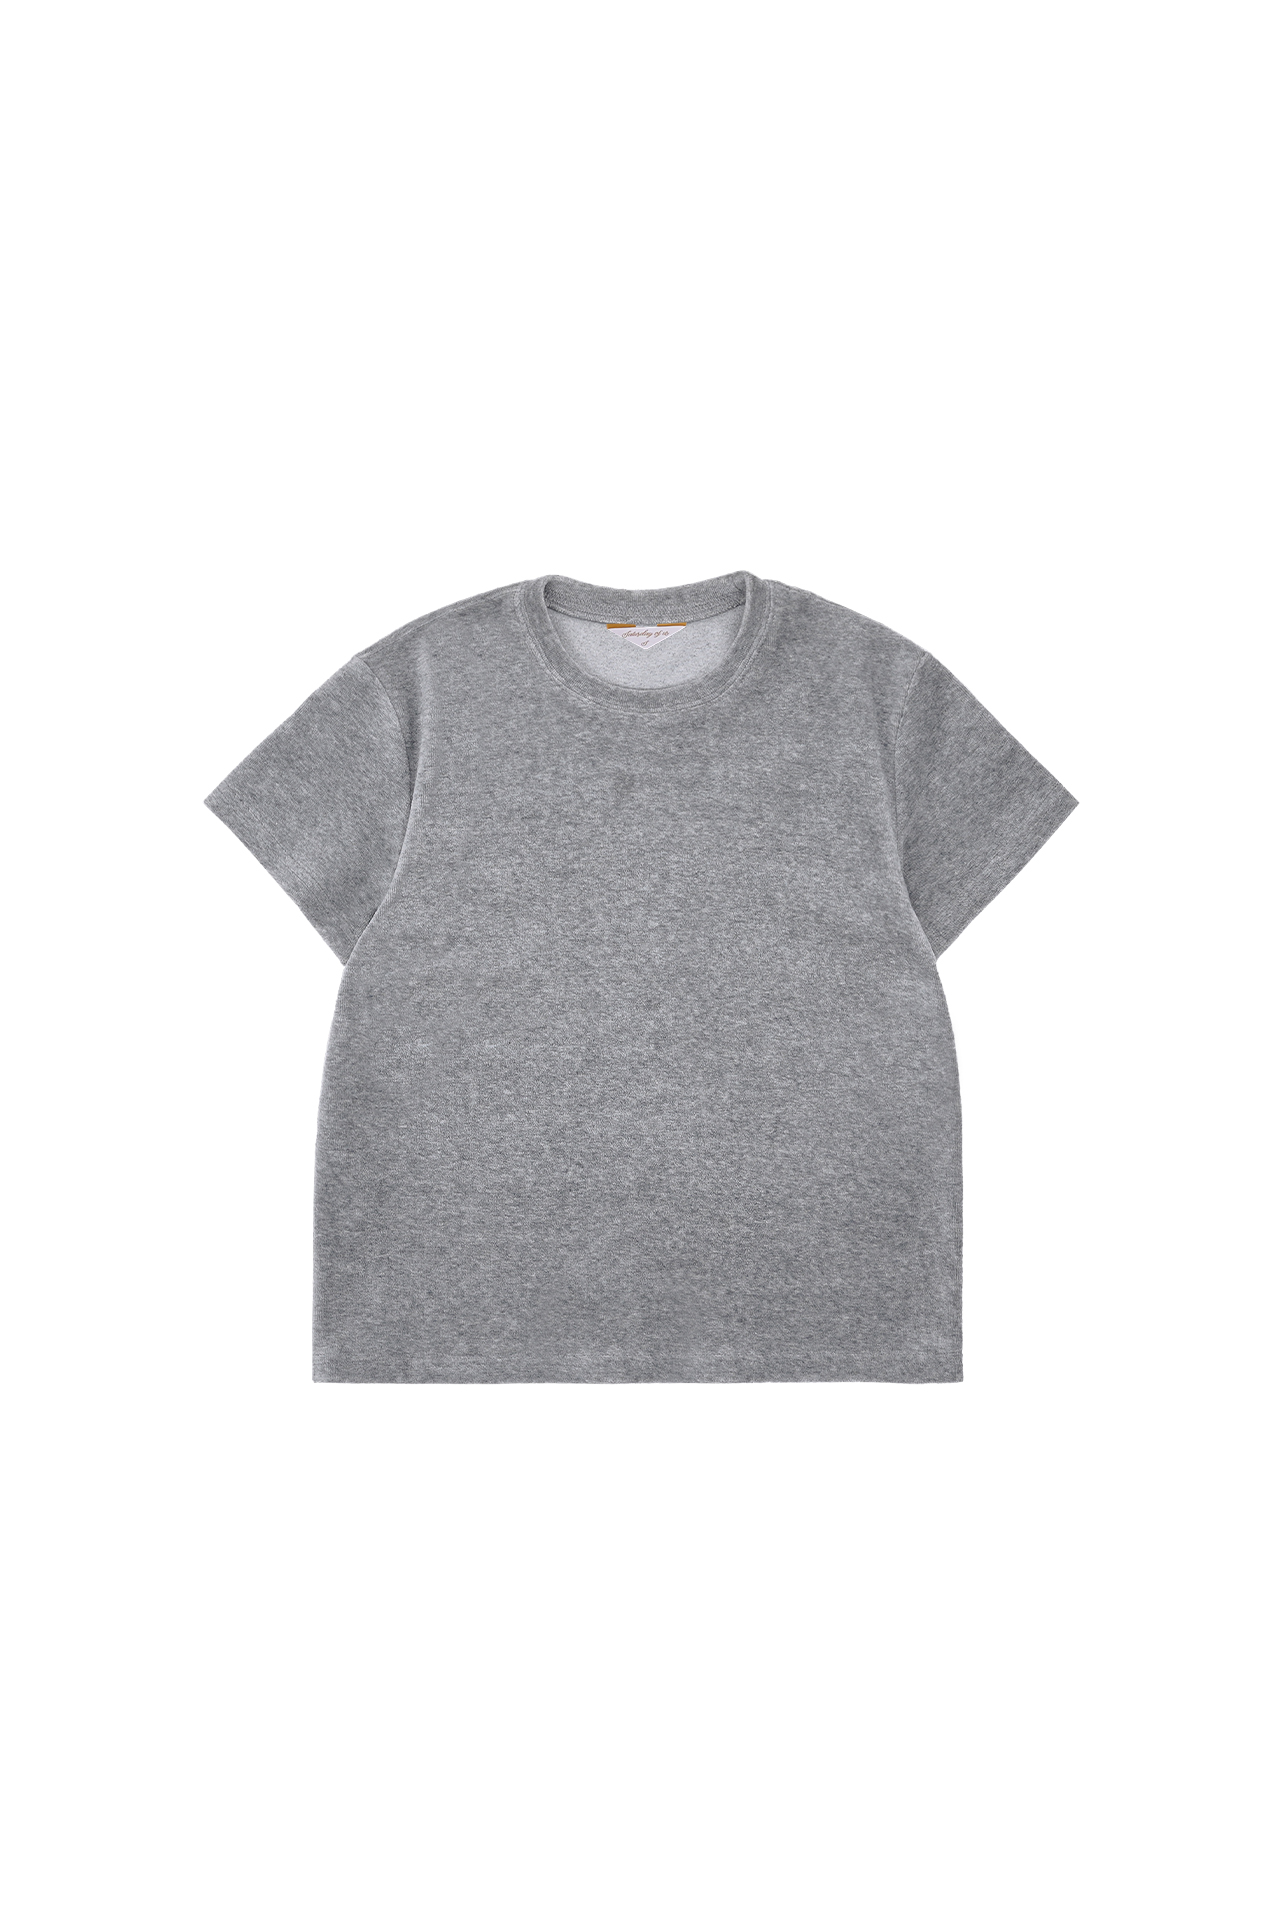 Women’s T-shirt Grey